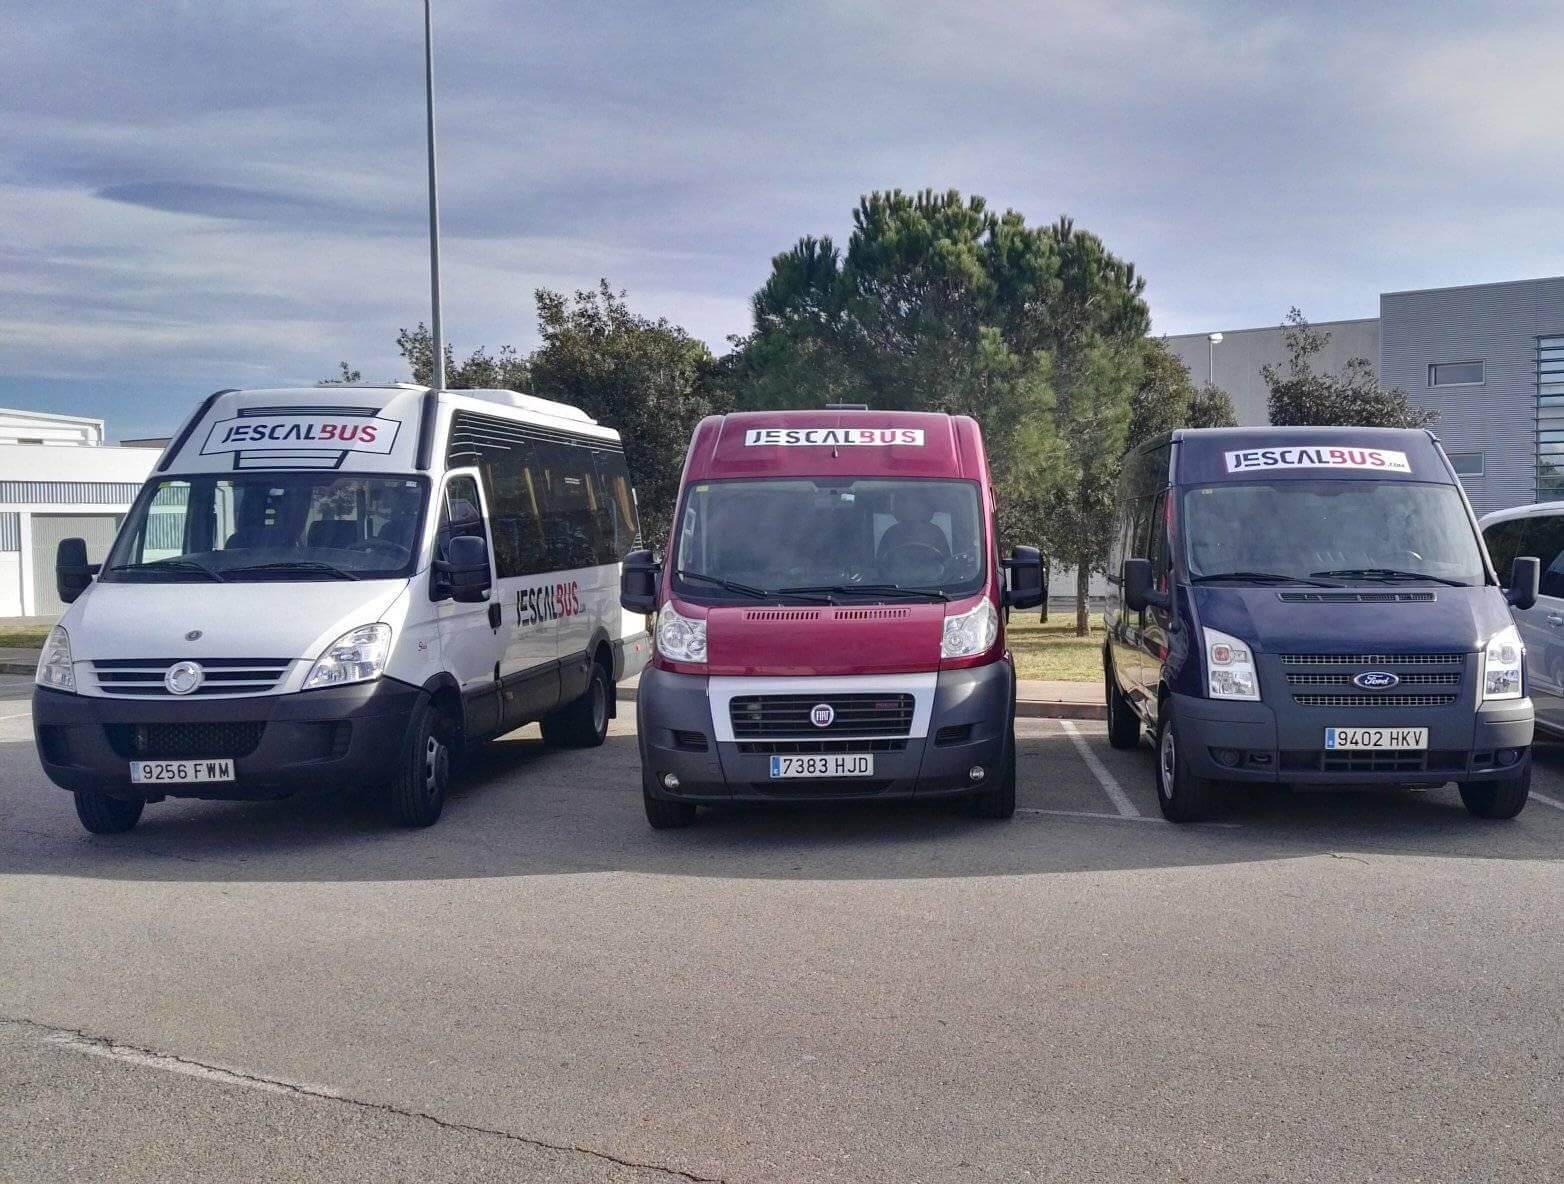 Huur een 13 seater Minibus  (. . 2014) van JESCALBUS S.A.U. in Girona 